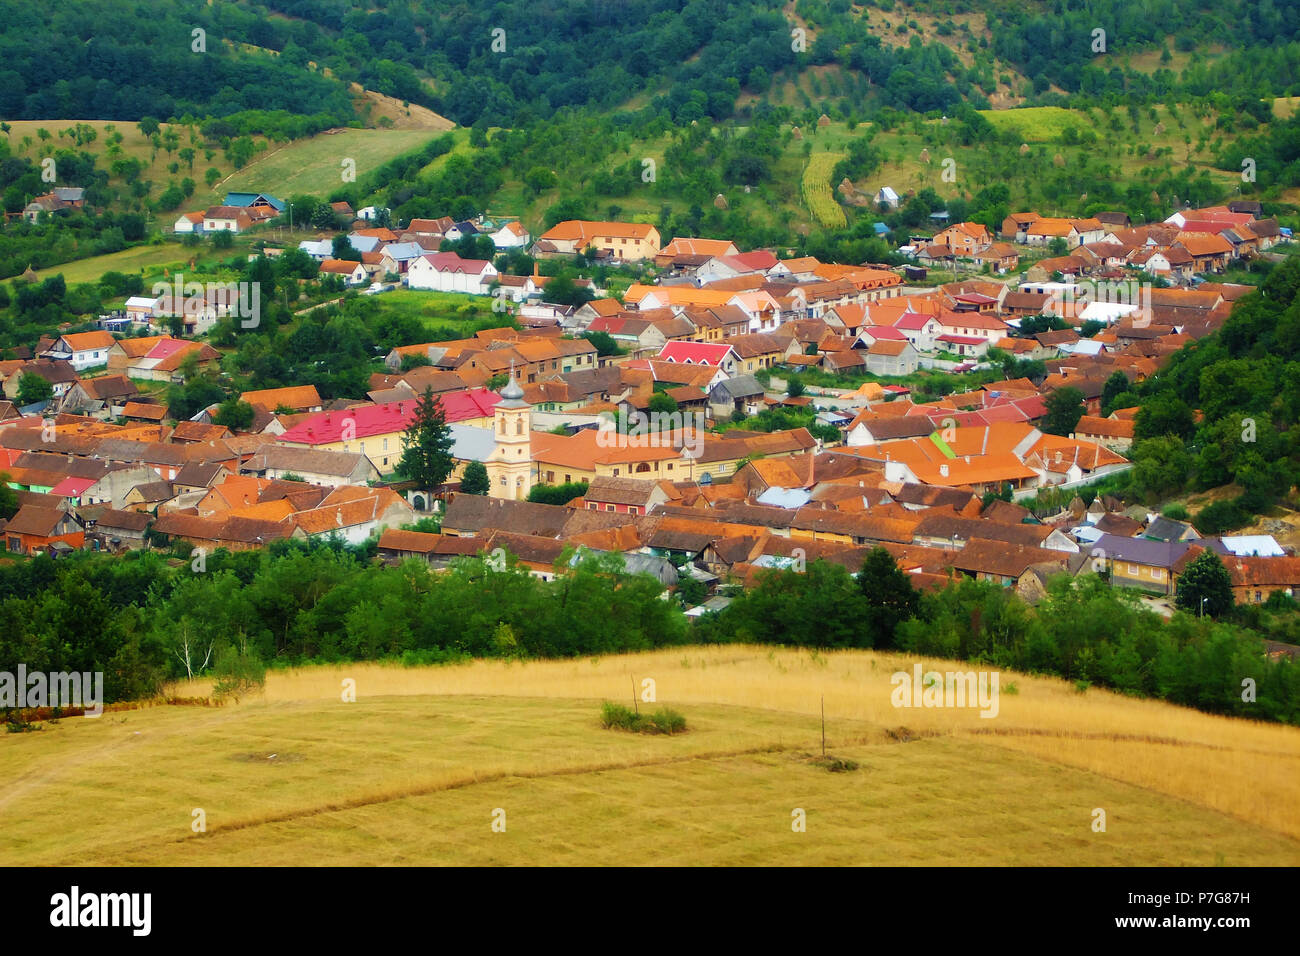 Villaggio rumeno, vista da sopra Foto Stock